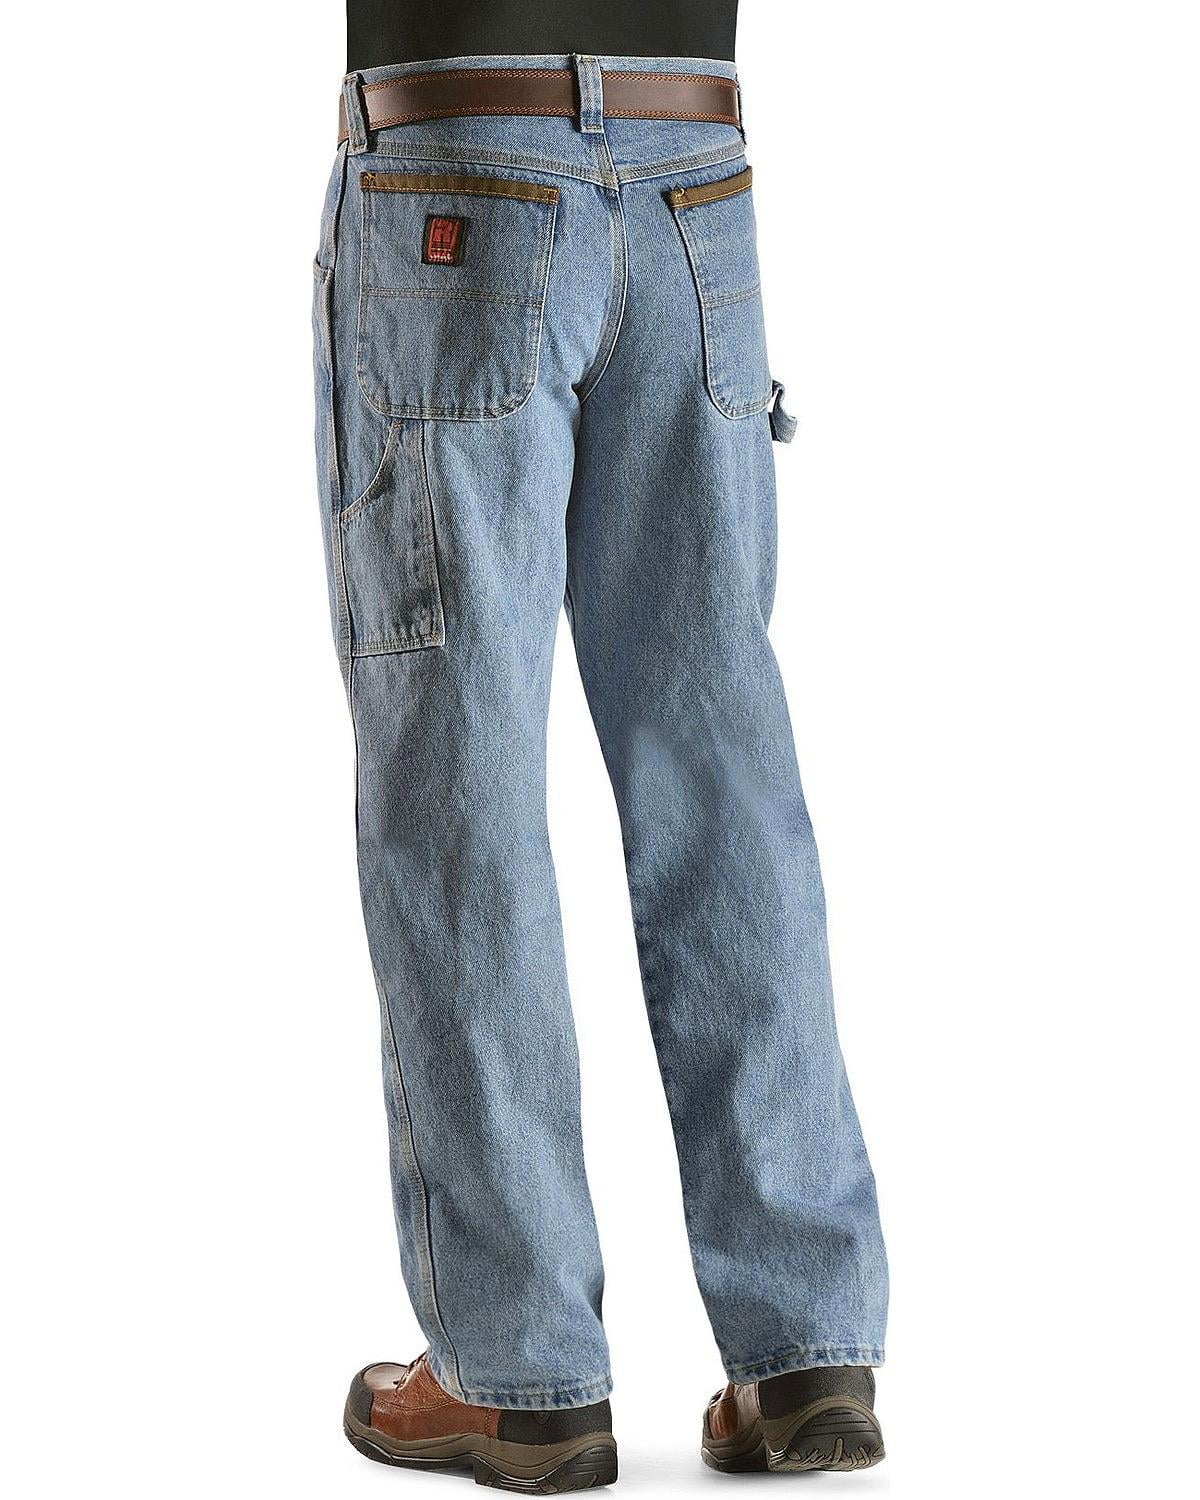 riggs carpenter jeans